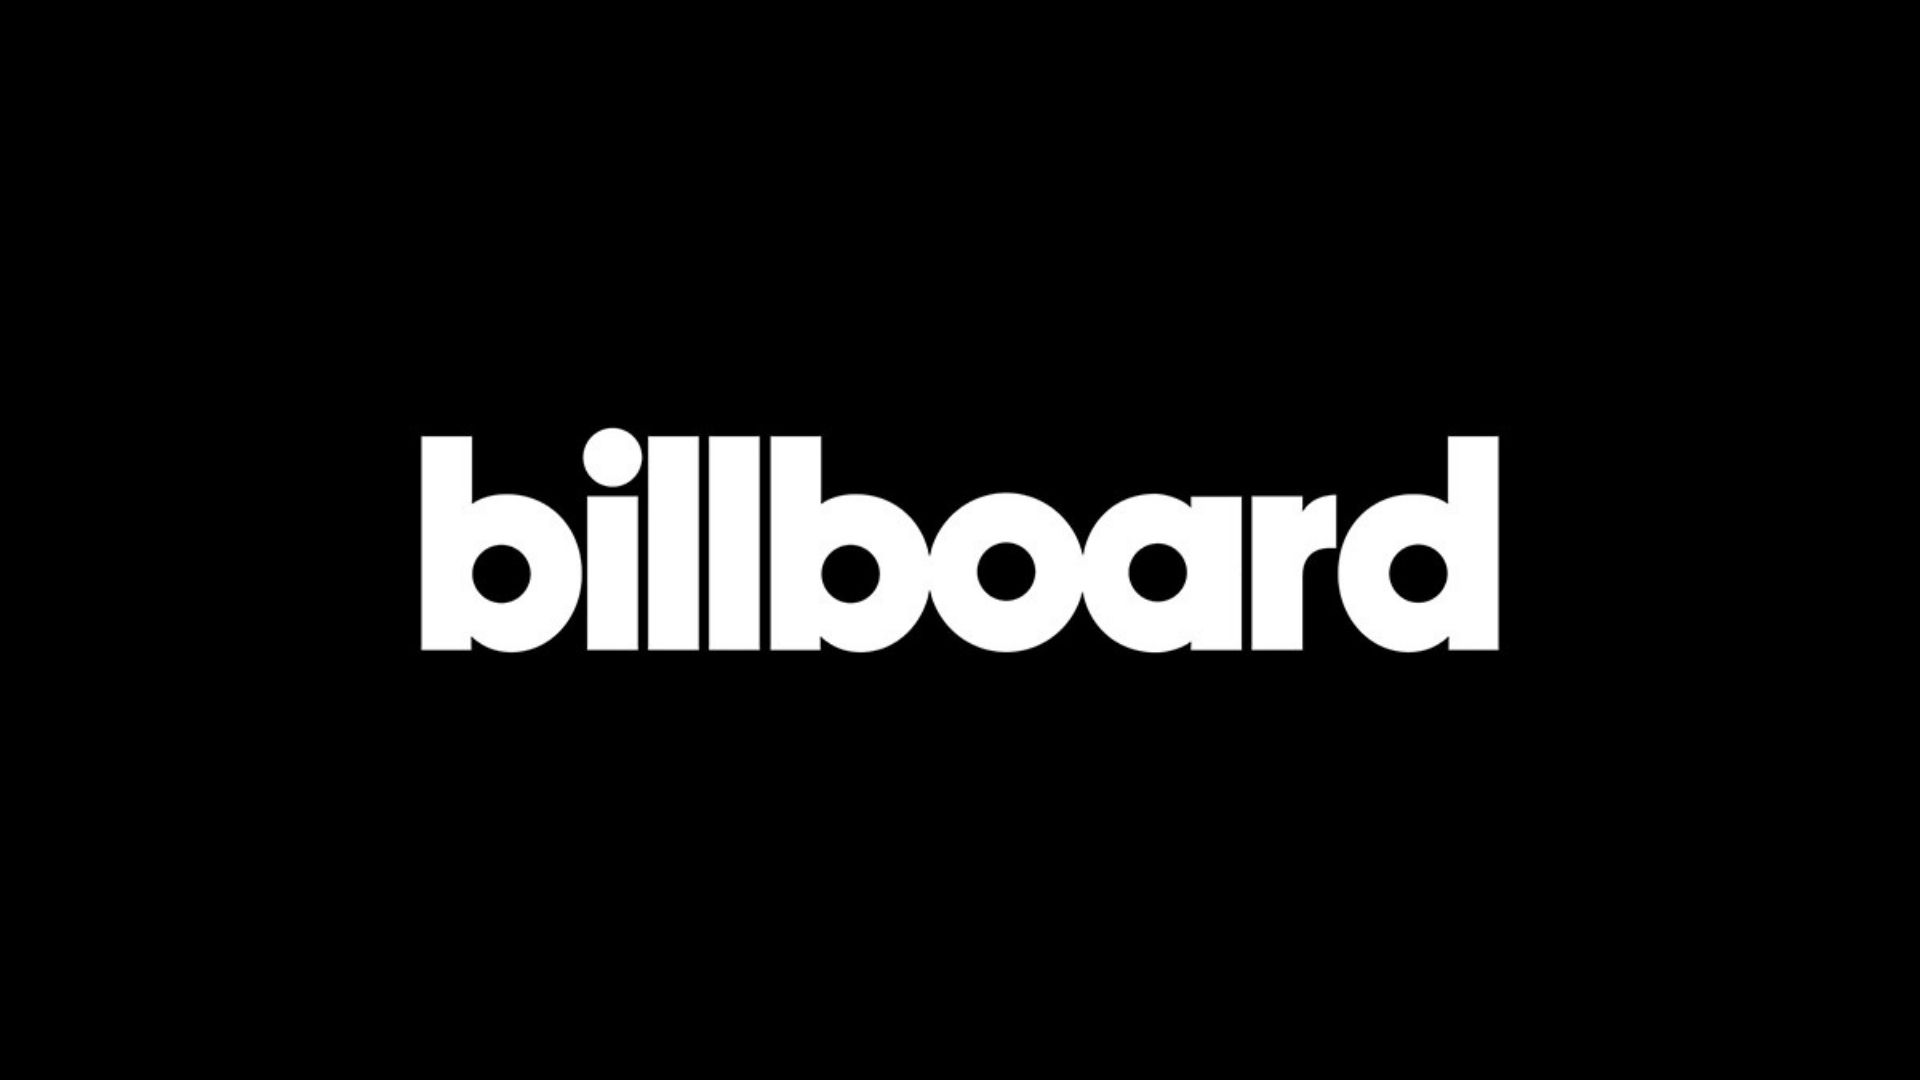 MañanasX: Billboard ha anunciado la lista de los mejores artistas de todos los tiempos